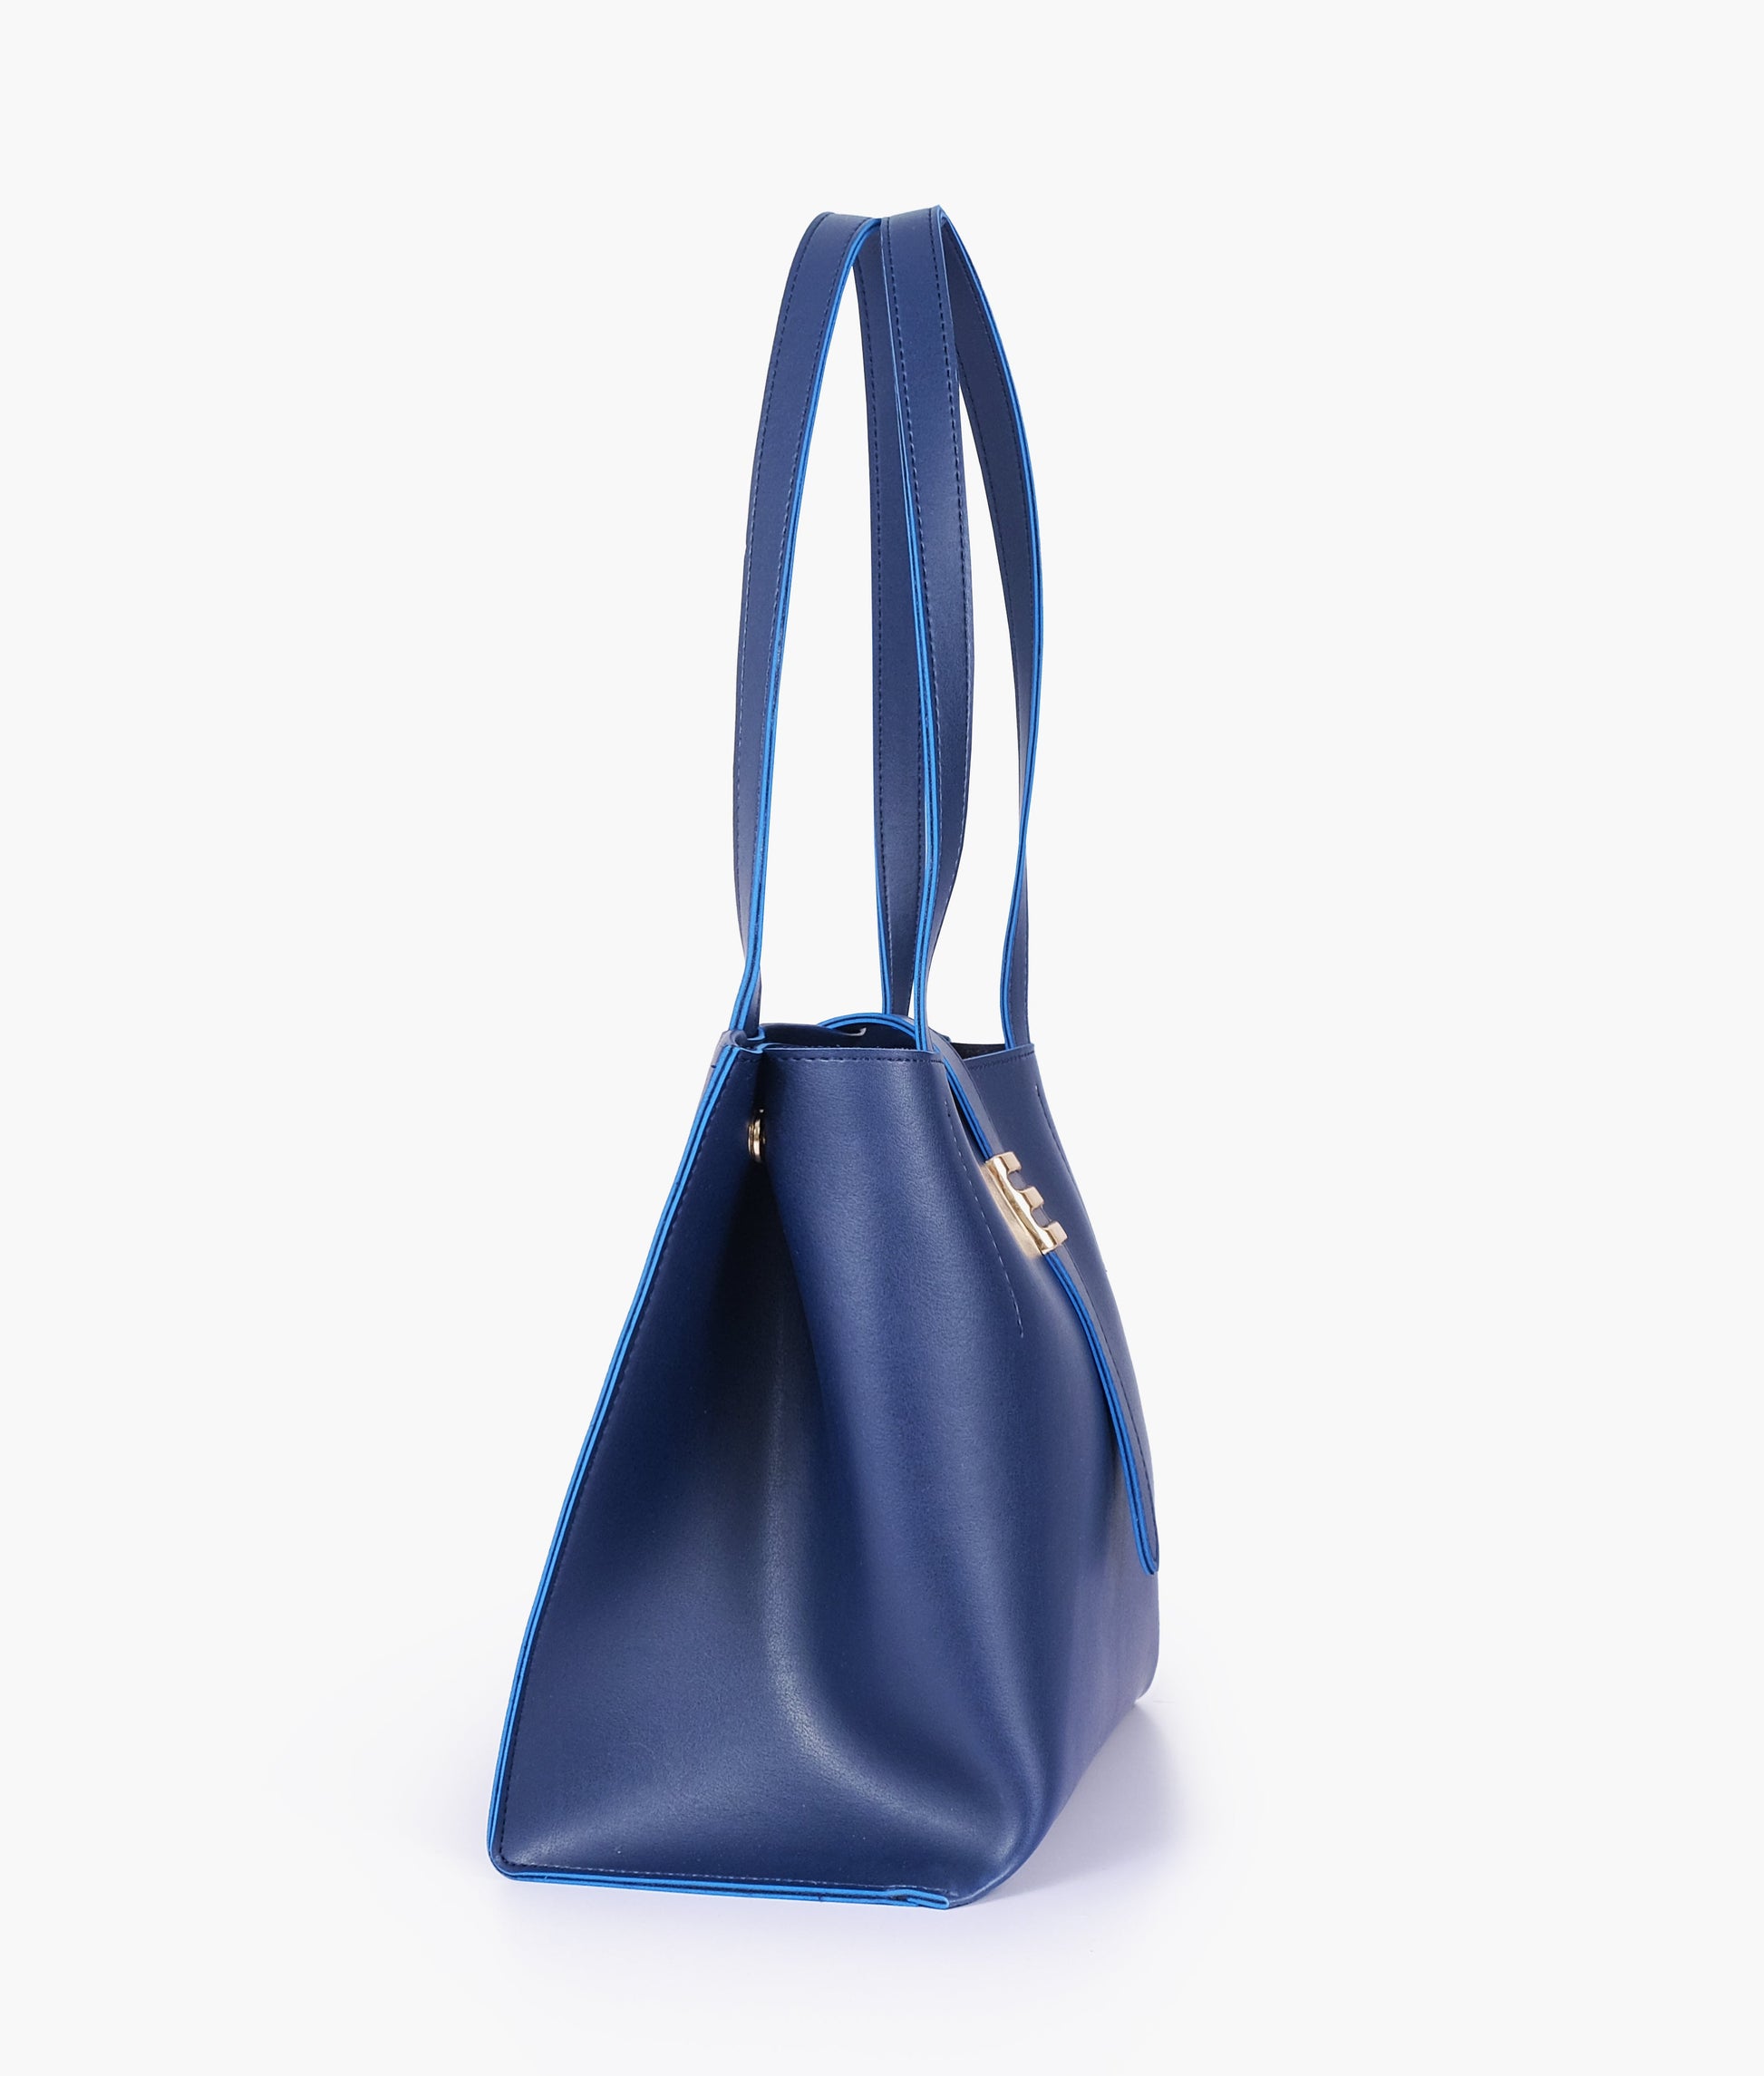 Buy Blue Mini Tote Bag - Dark Slate Blue in Pakistan